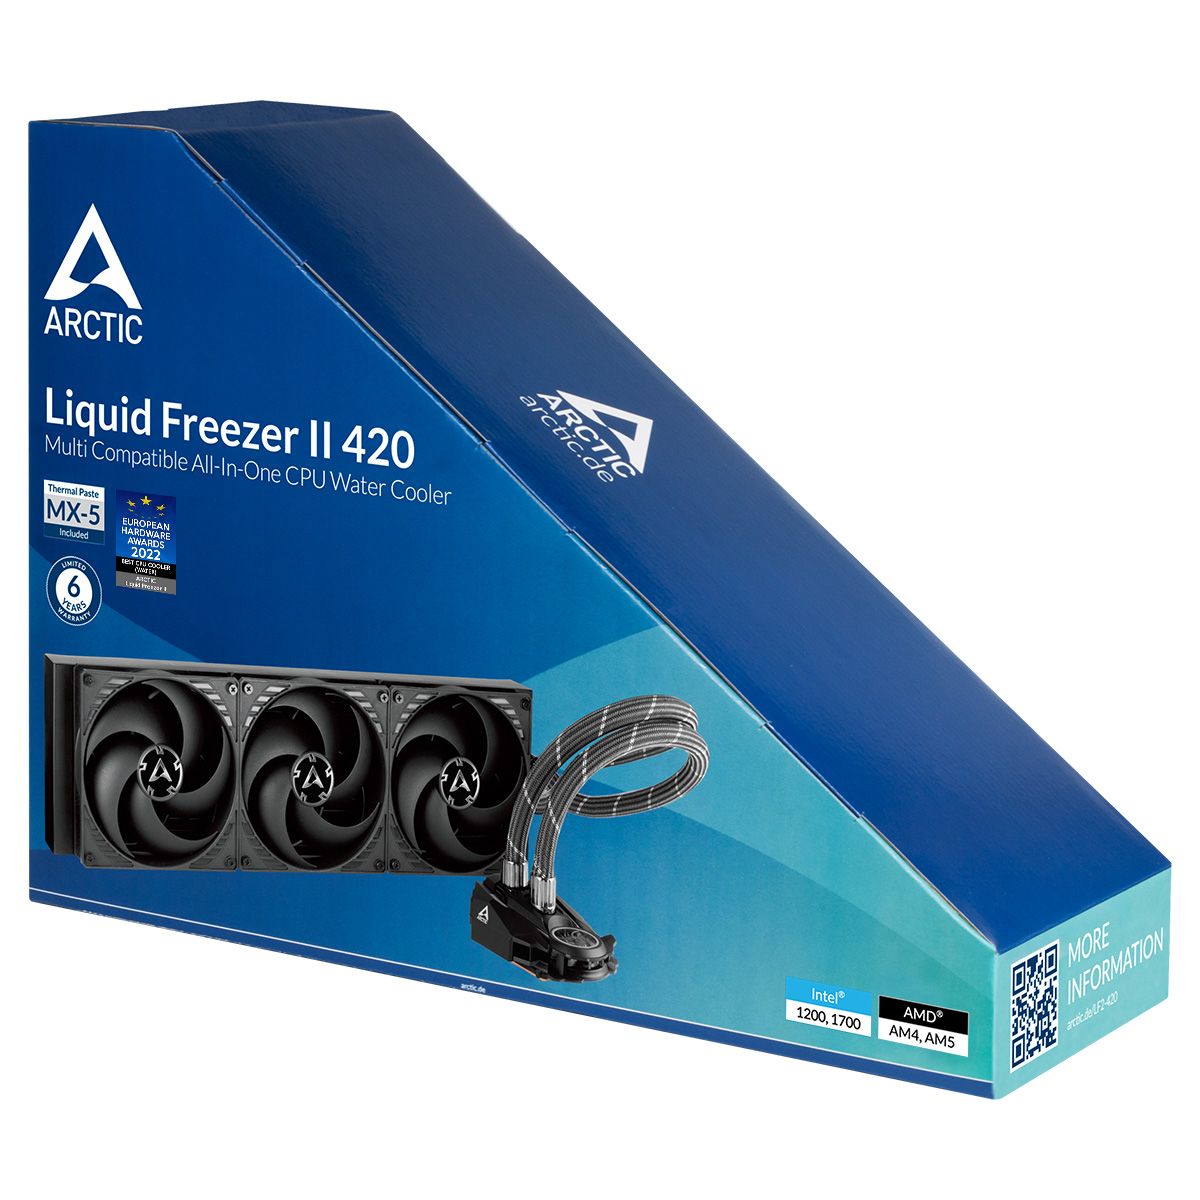 Liquid Freezer II 420 vs. LT720